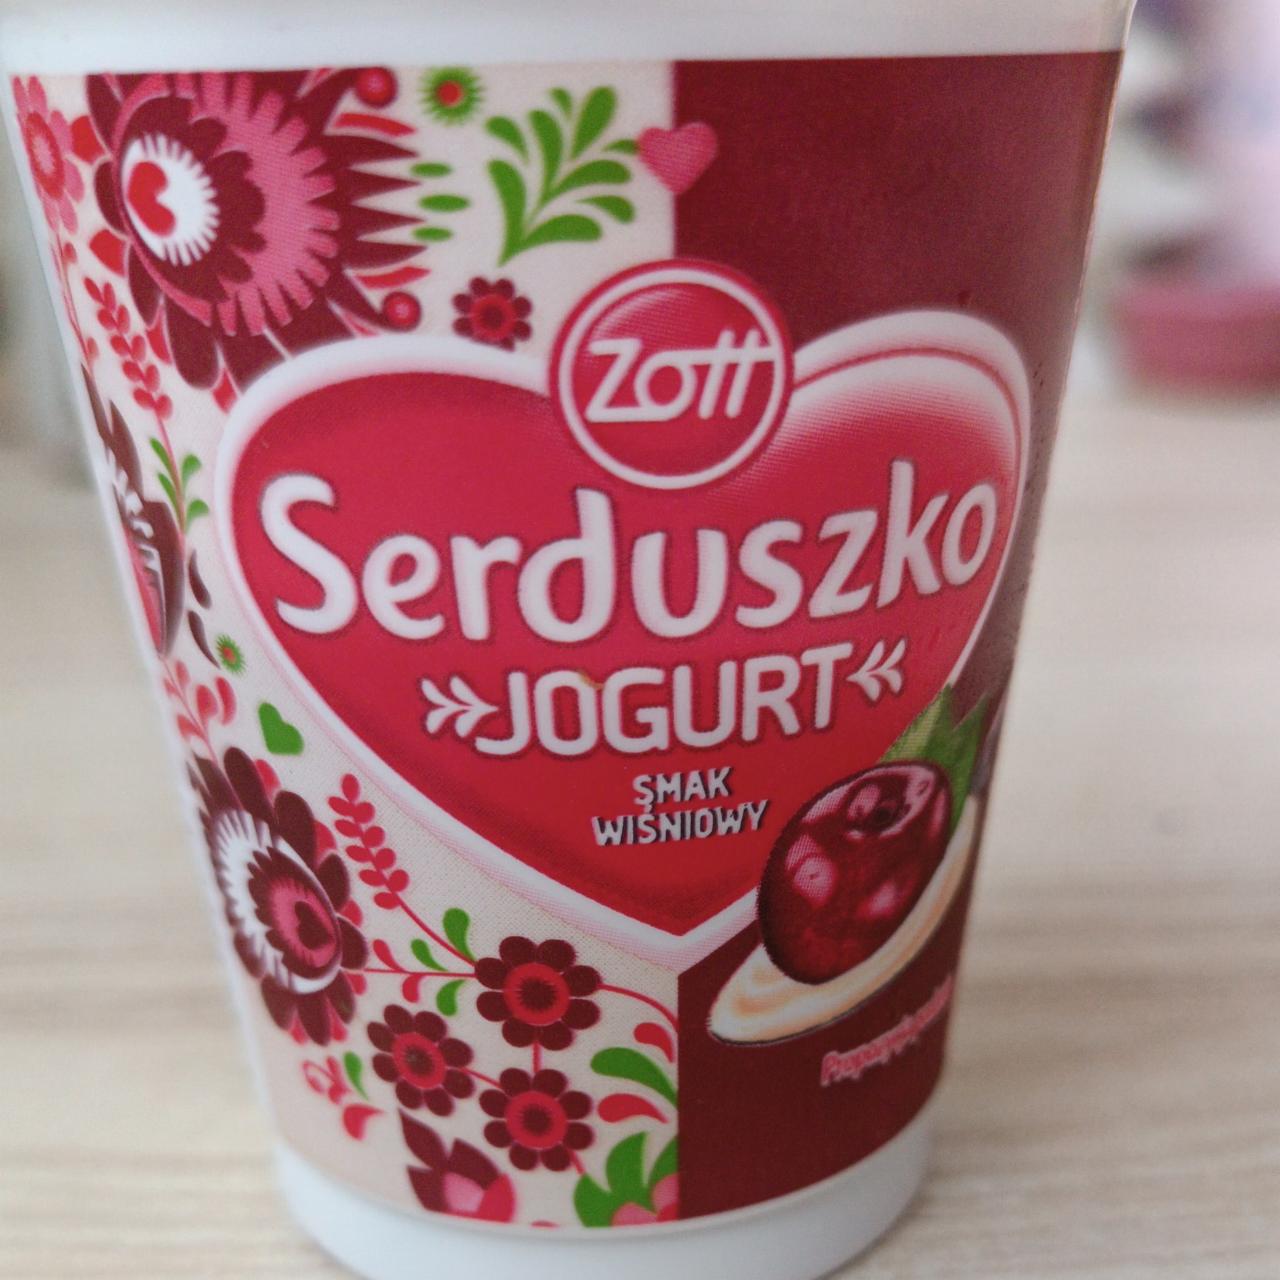 Zdjęcia - Serduszko jogurt smak wiśniowy Zott